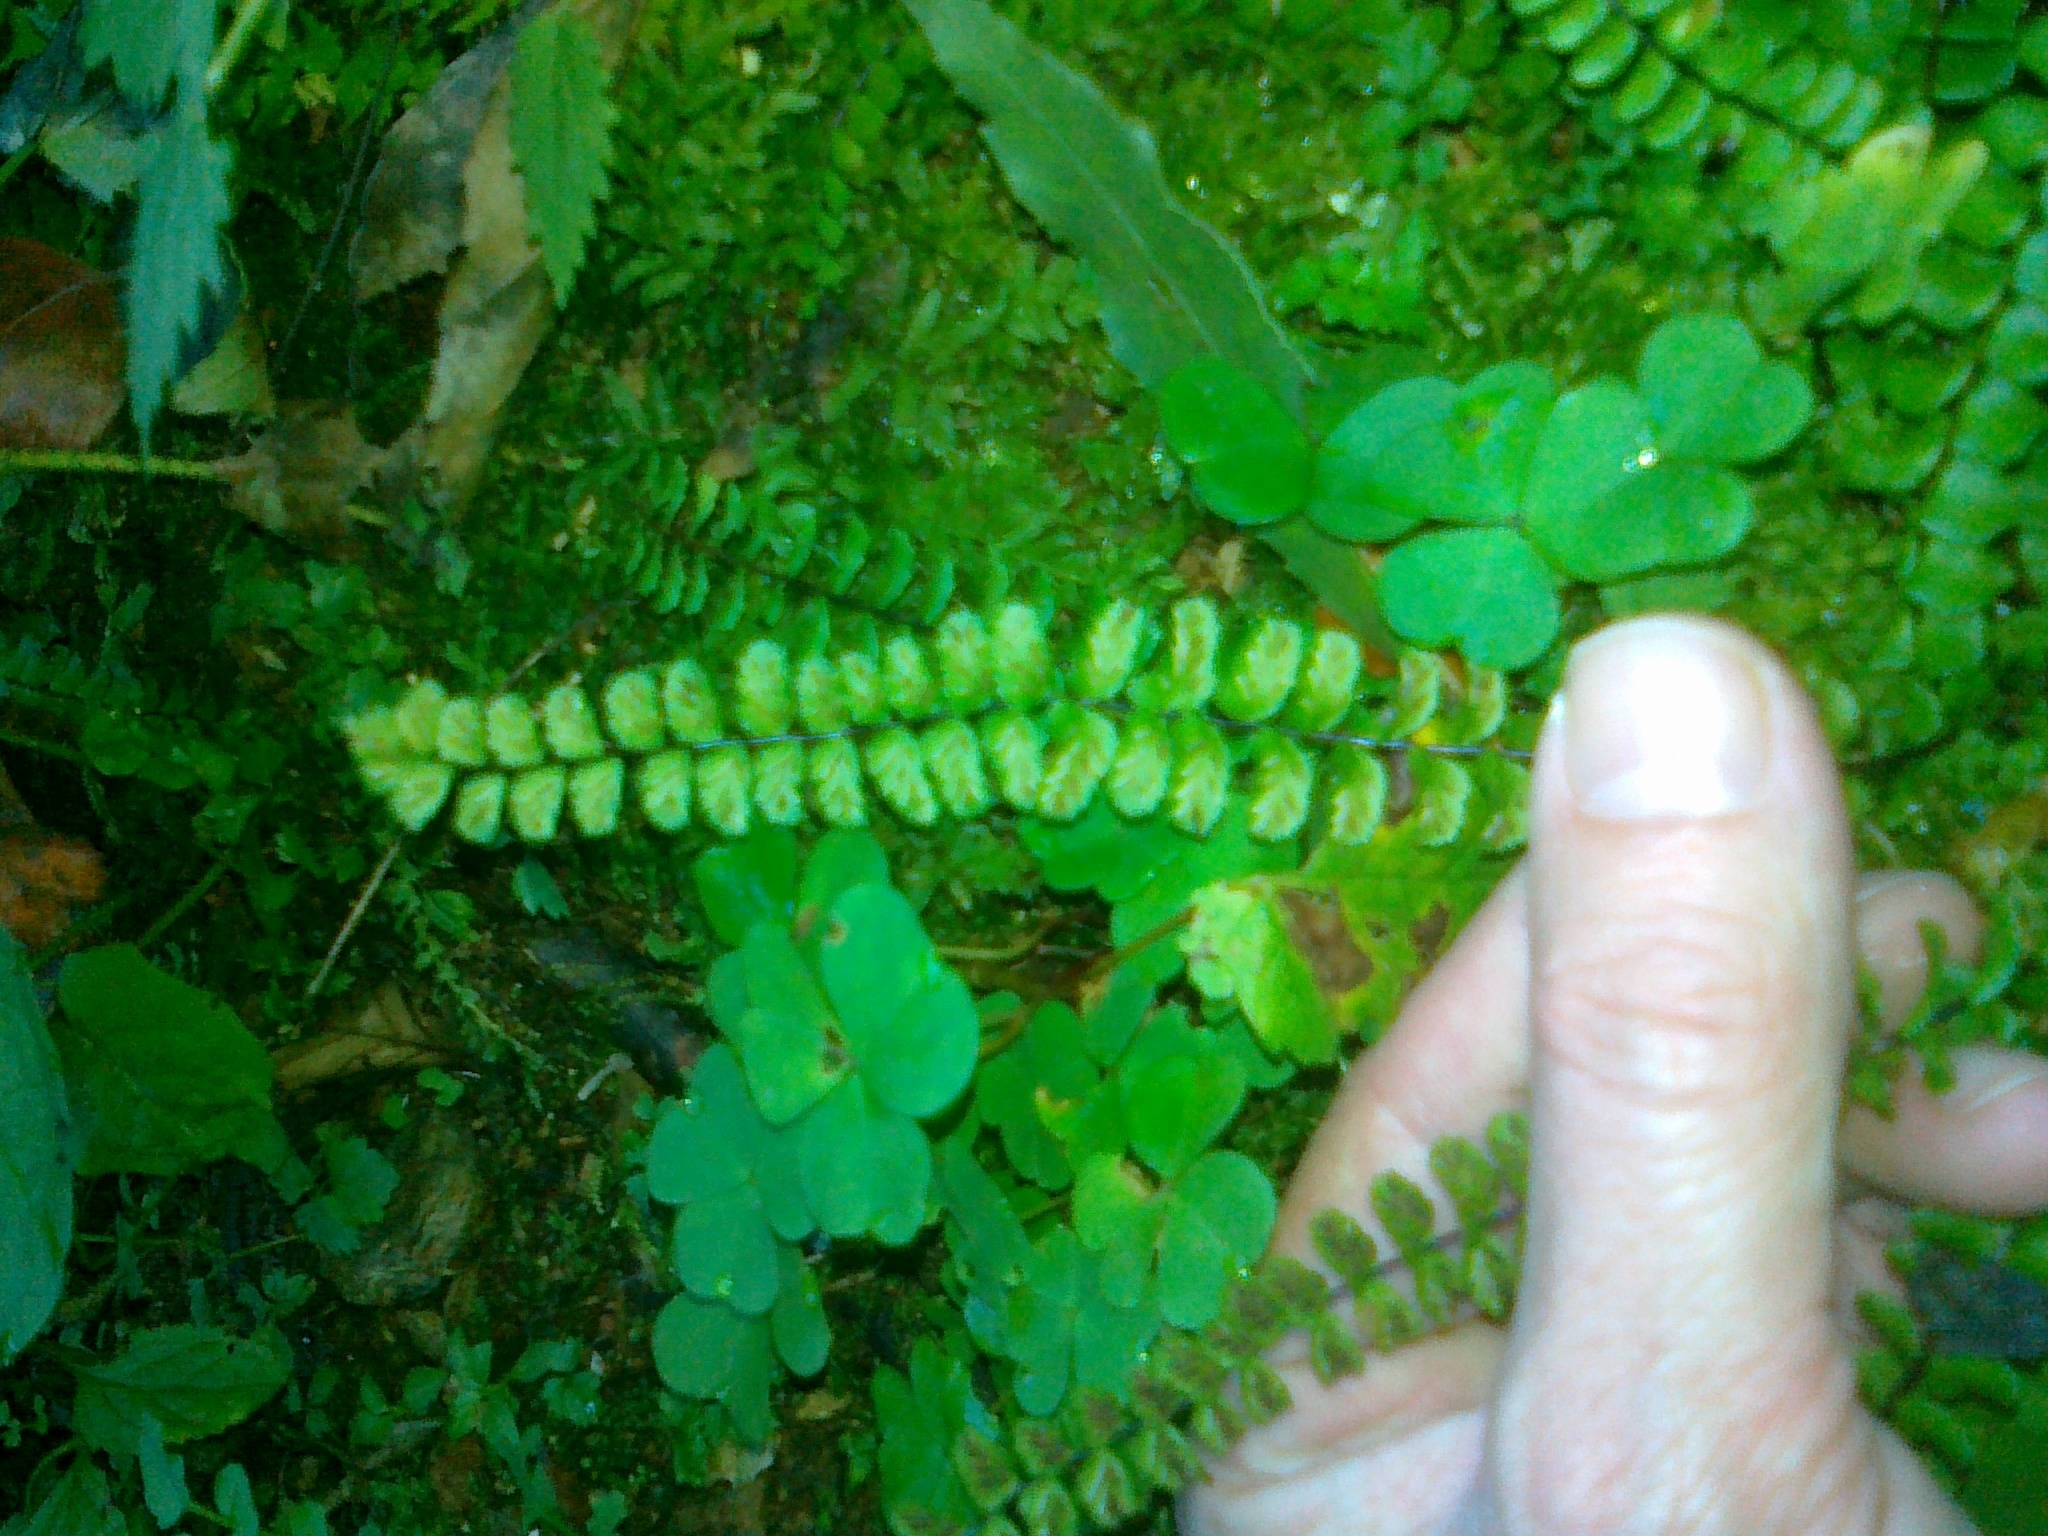 Image of maidenhair spleenwort